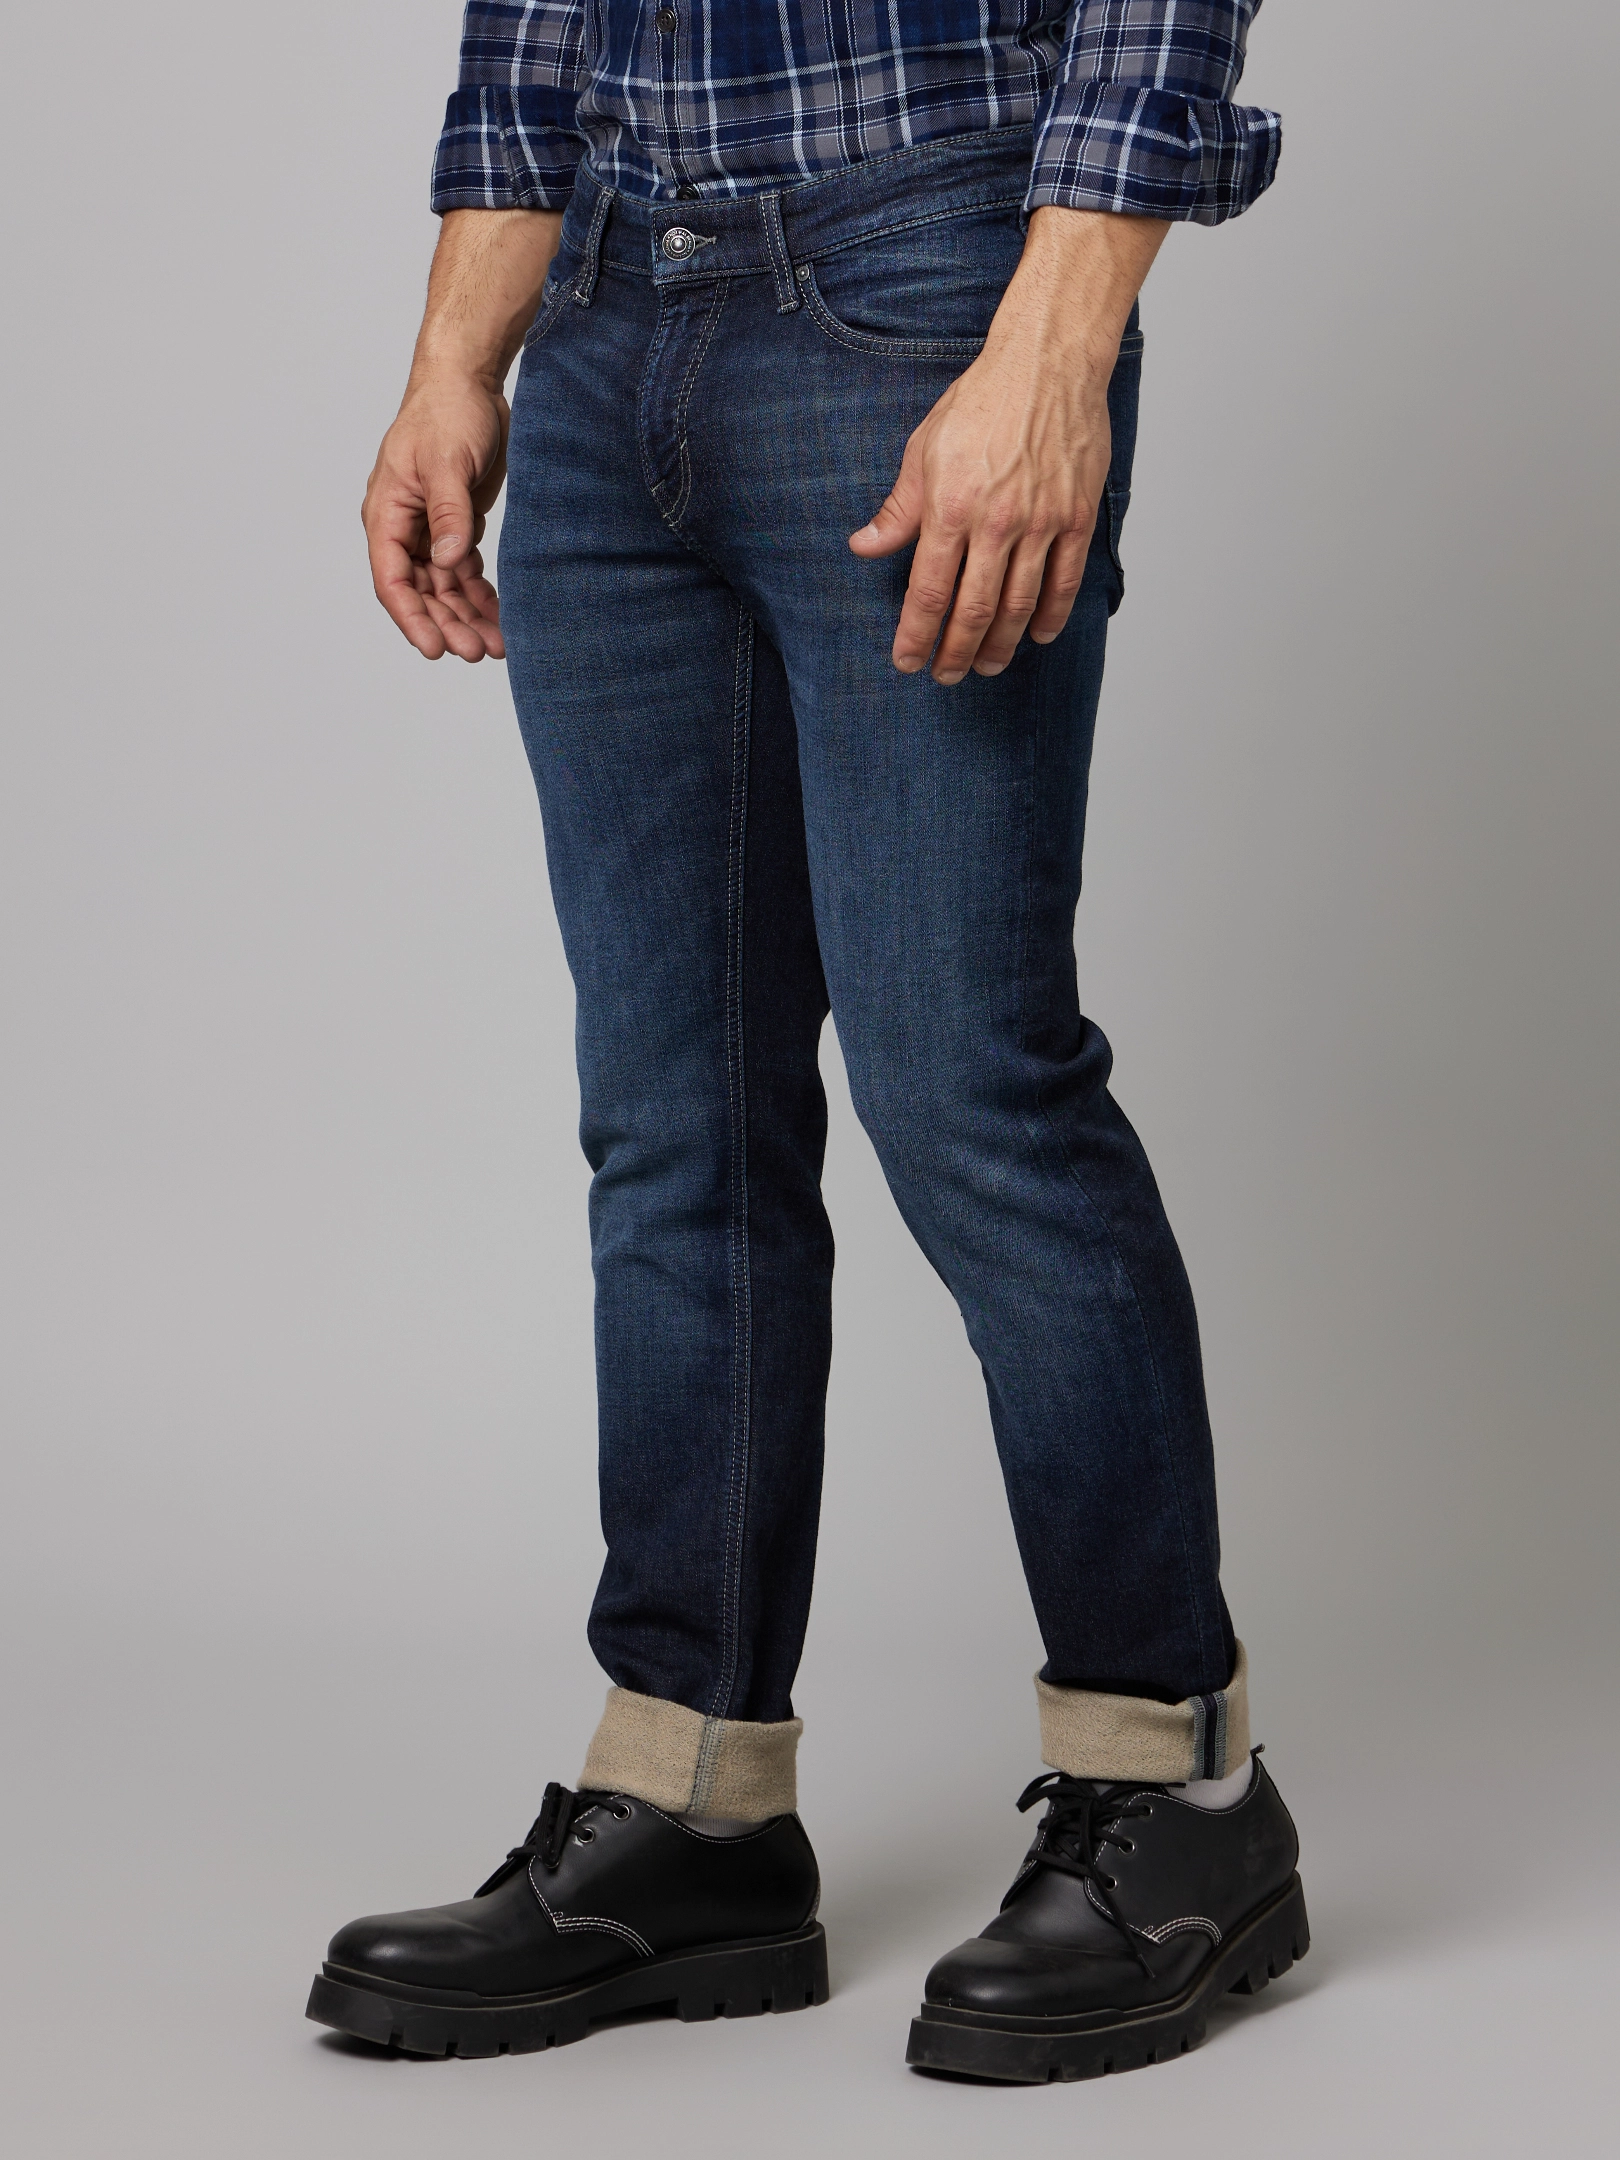 Celio Mens Jeans